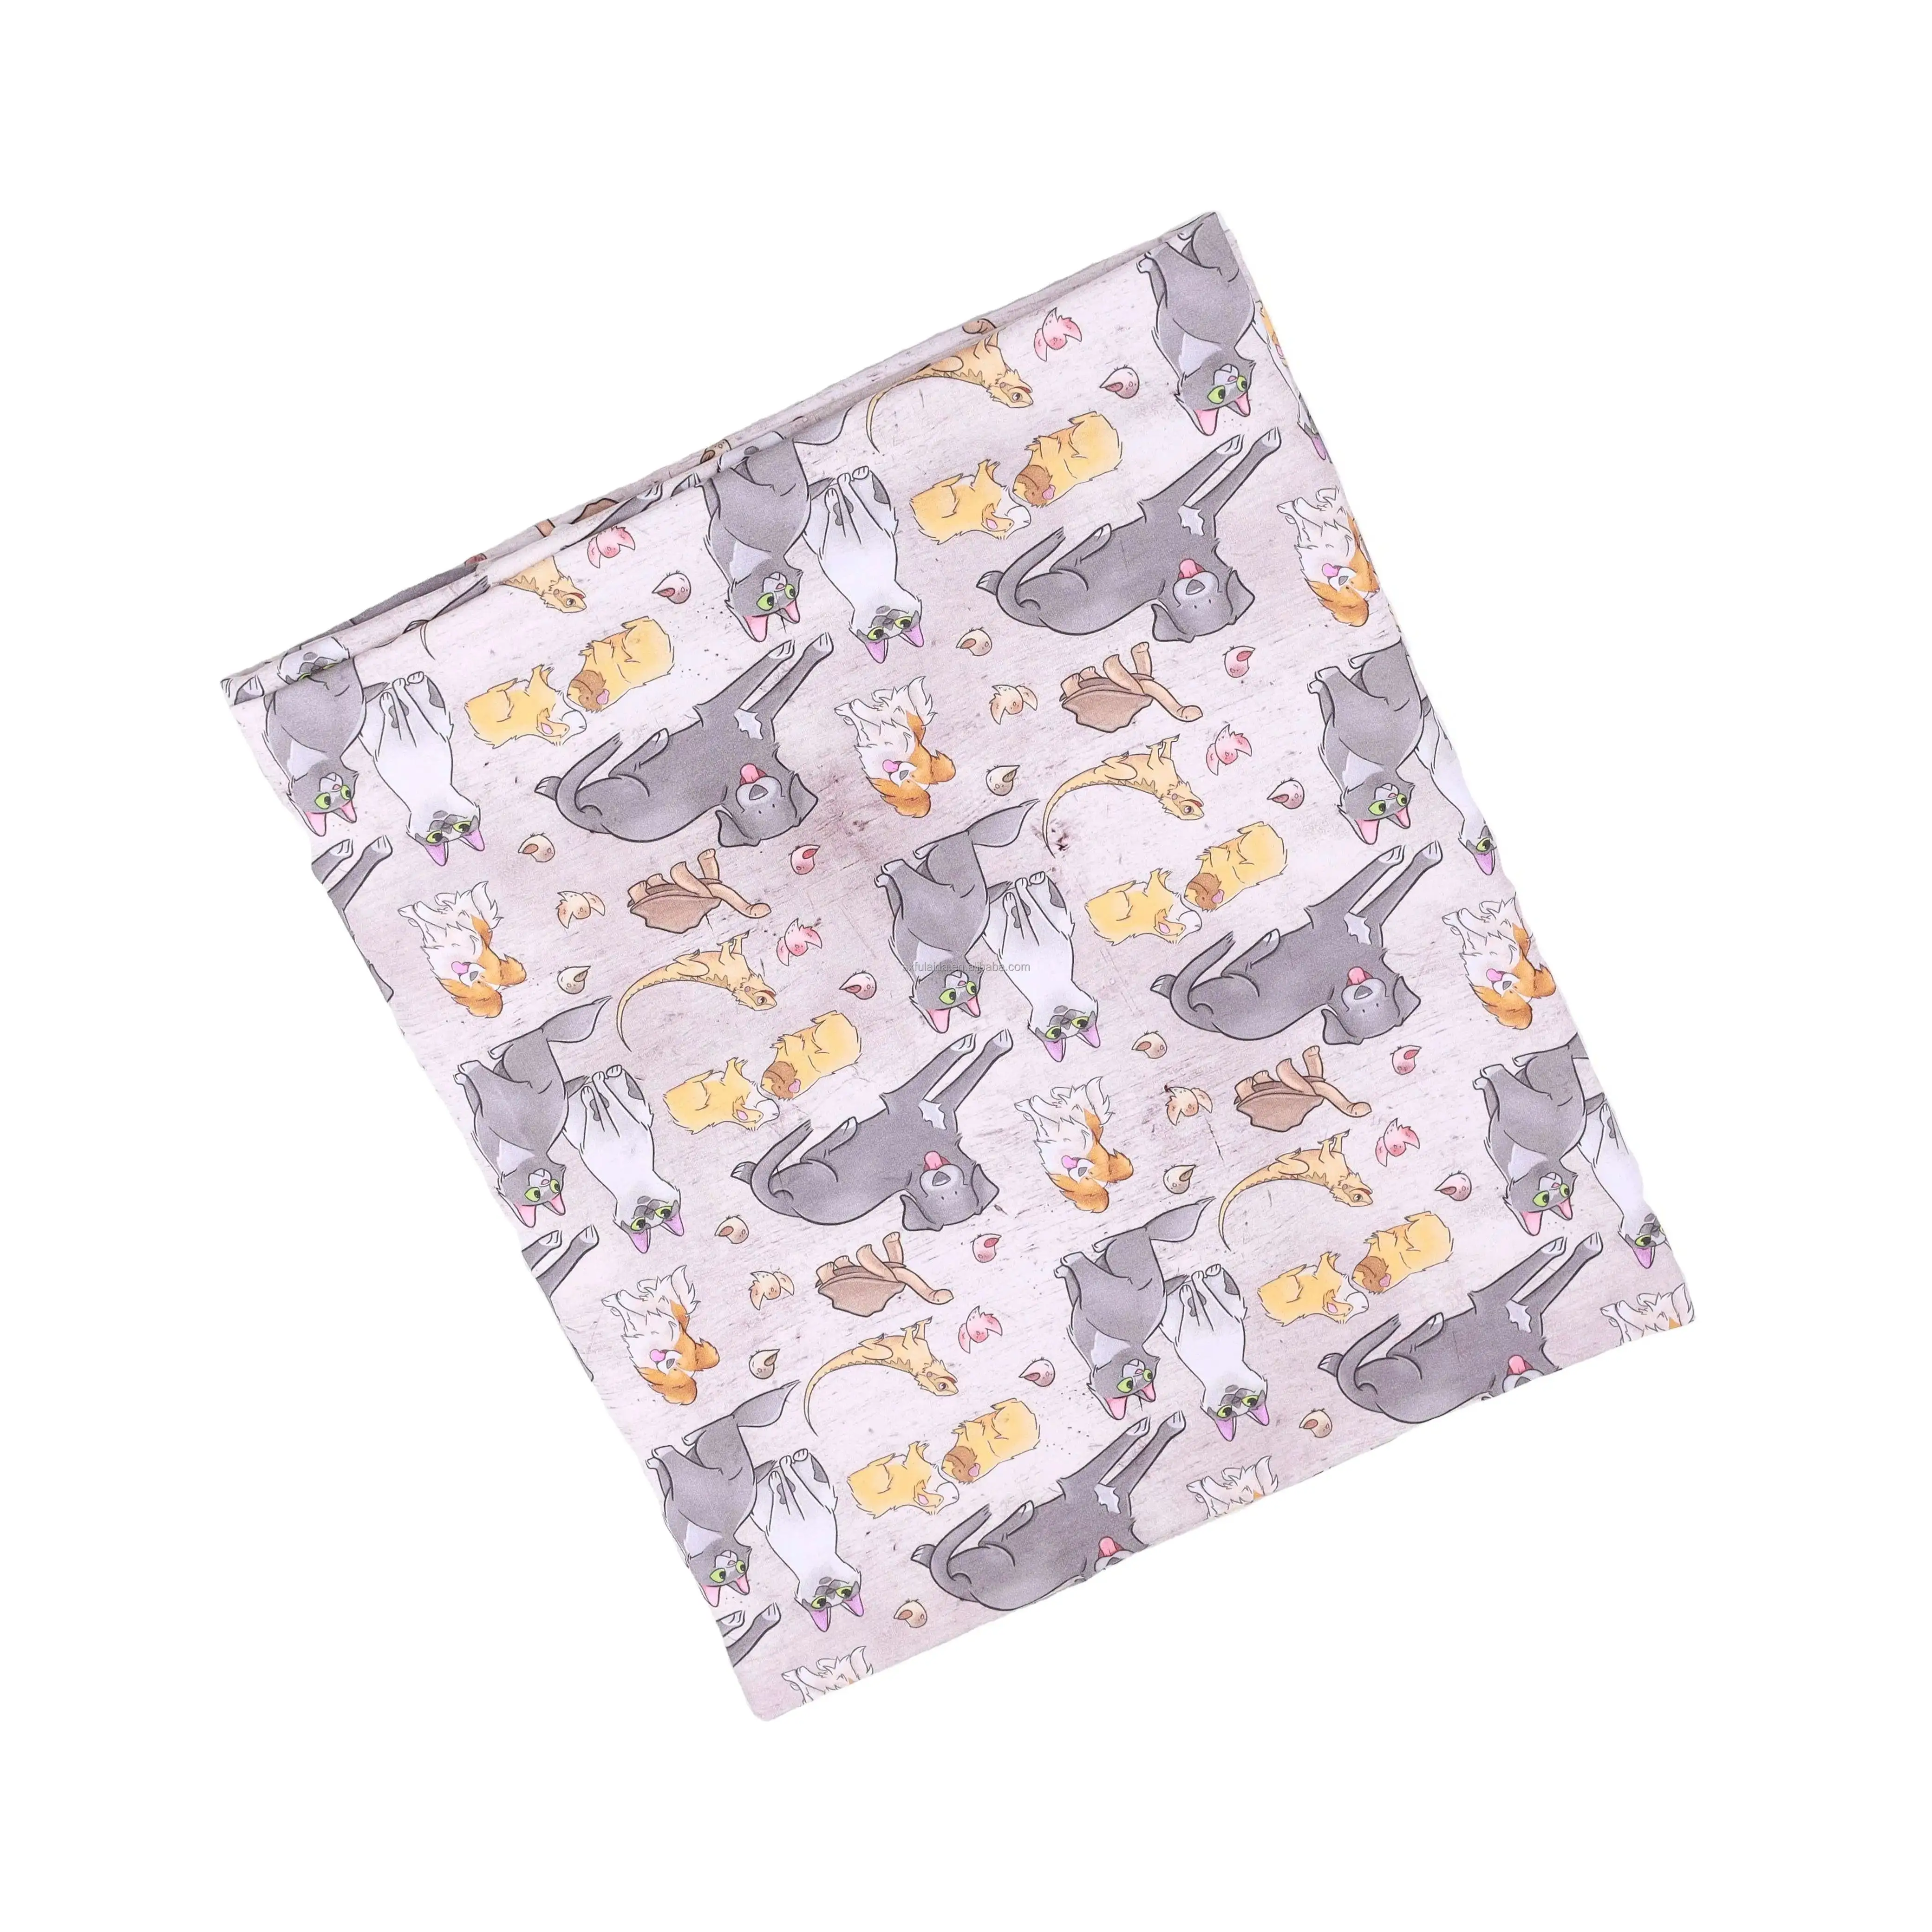 Tissu rayonne en coton Lycra 90 polyester 10 spandex poly tricoté imprimé numérique personnalisé pour bébé tissu